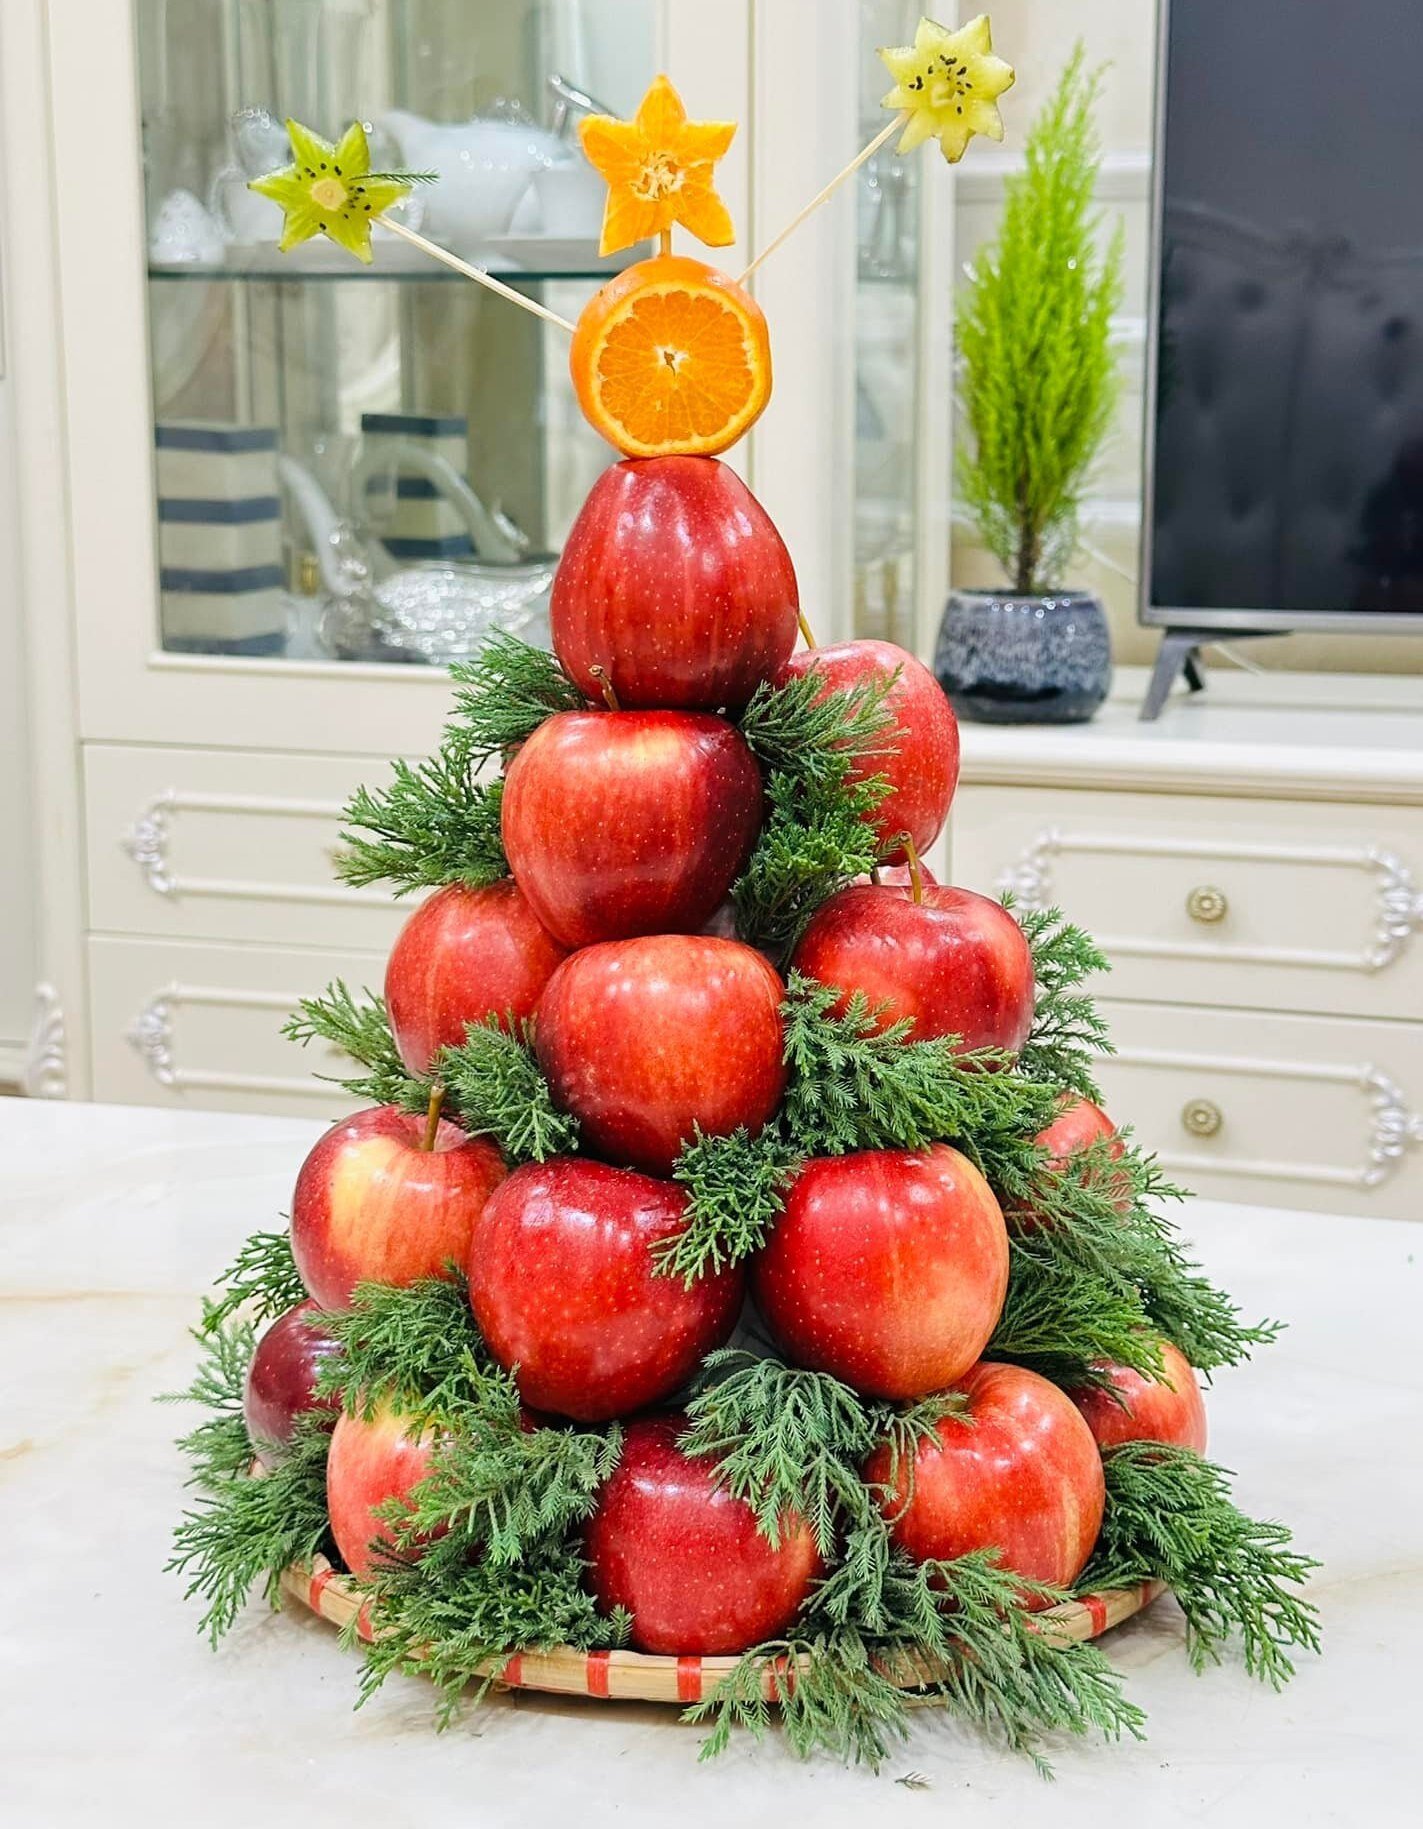 Không cần cắt tỉa hay tạo hình, bà mẹ này để nguyên những quả táo mà vẫn có thể dựng thành công cây thông Noel đẹp lạ. Cây thông này sẽ chơi được lâu hơn so với những cây thông từ trái cây cắt tỉa. (Ảnh: Kim JinHua)